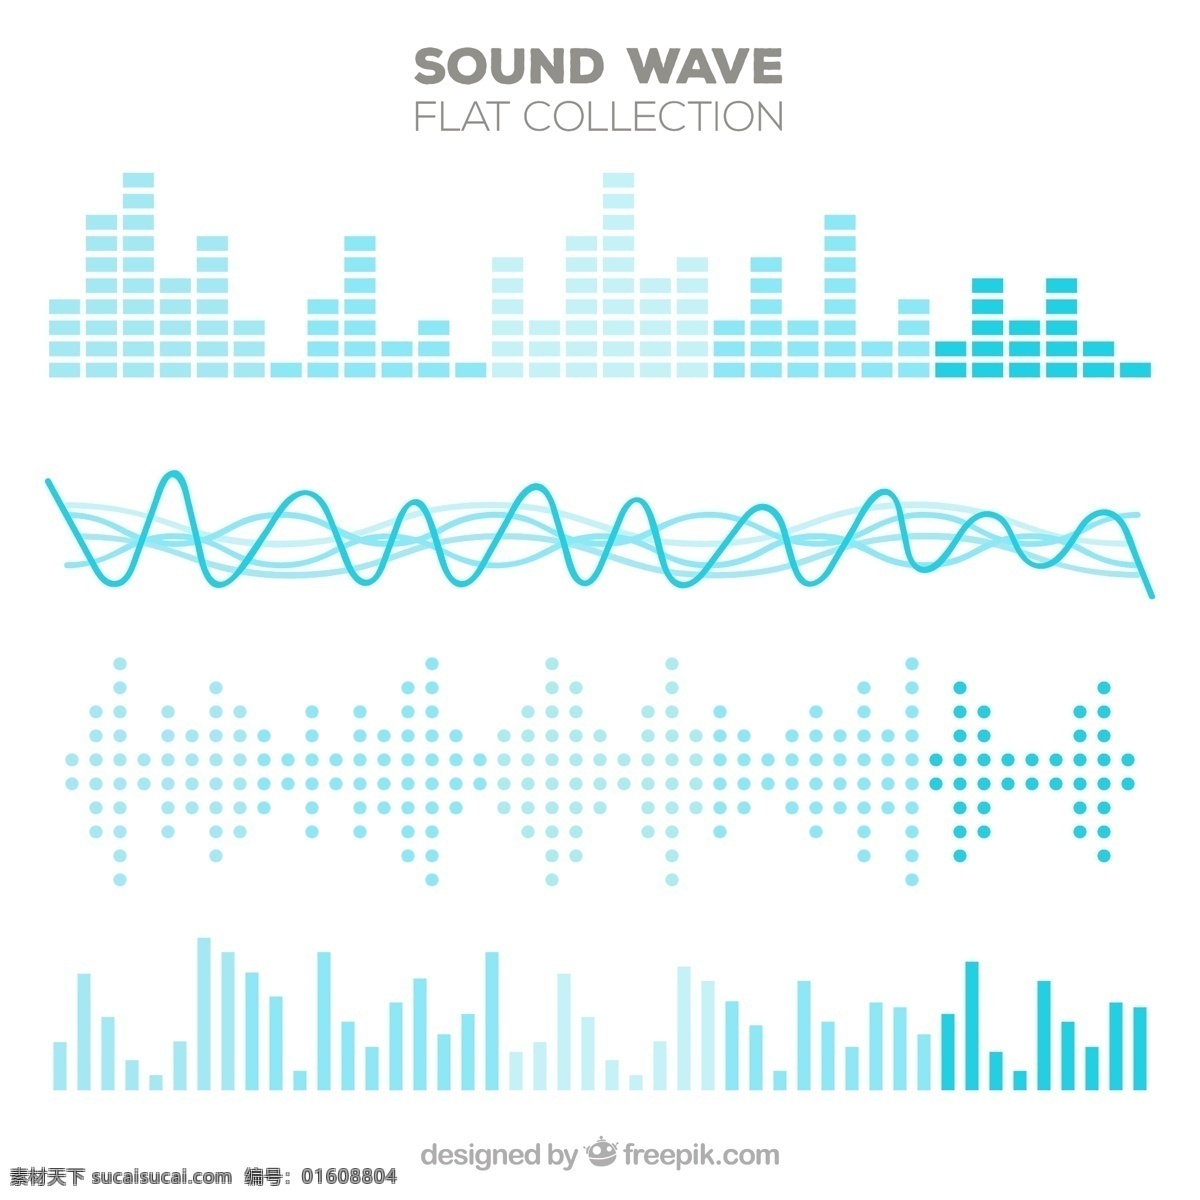 蓝色 音调 扁平 声波 多样性 音乐 技术 彩色 波浪 数字 平板 半色调 平面设计 声音 音频 录音 轨迹 均衡器 歌曲 音量